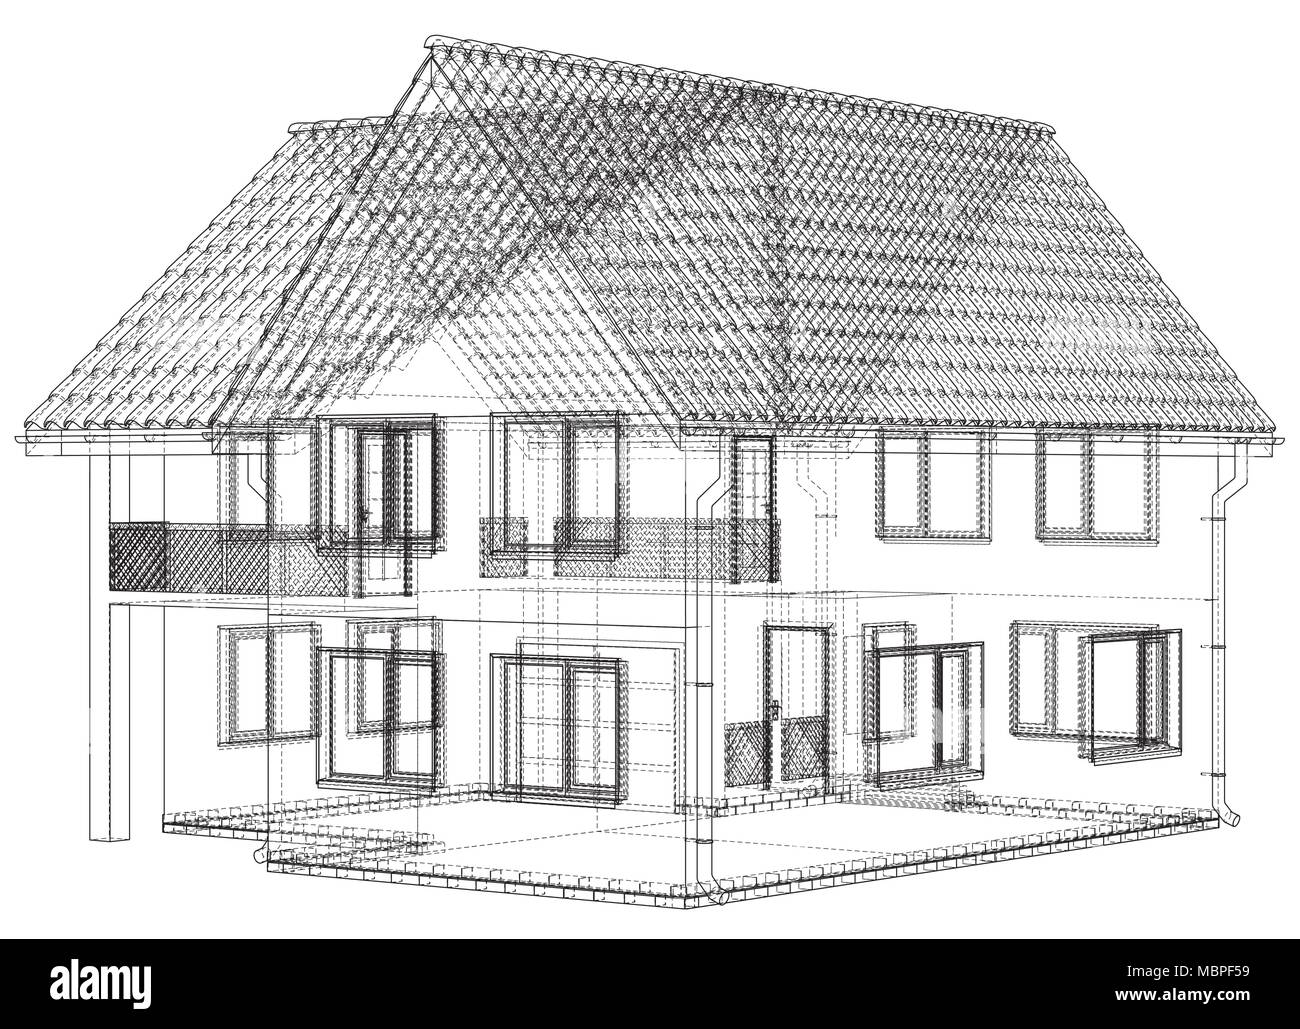 Fil maison blueprint - isolated over a white background Illustration de Vecteur